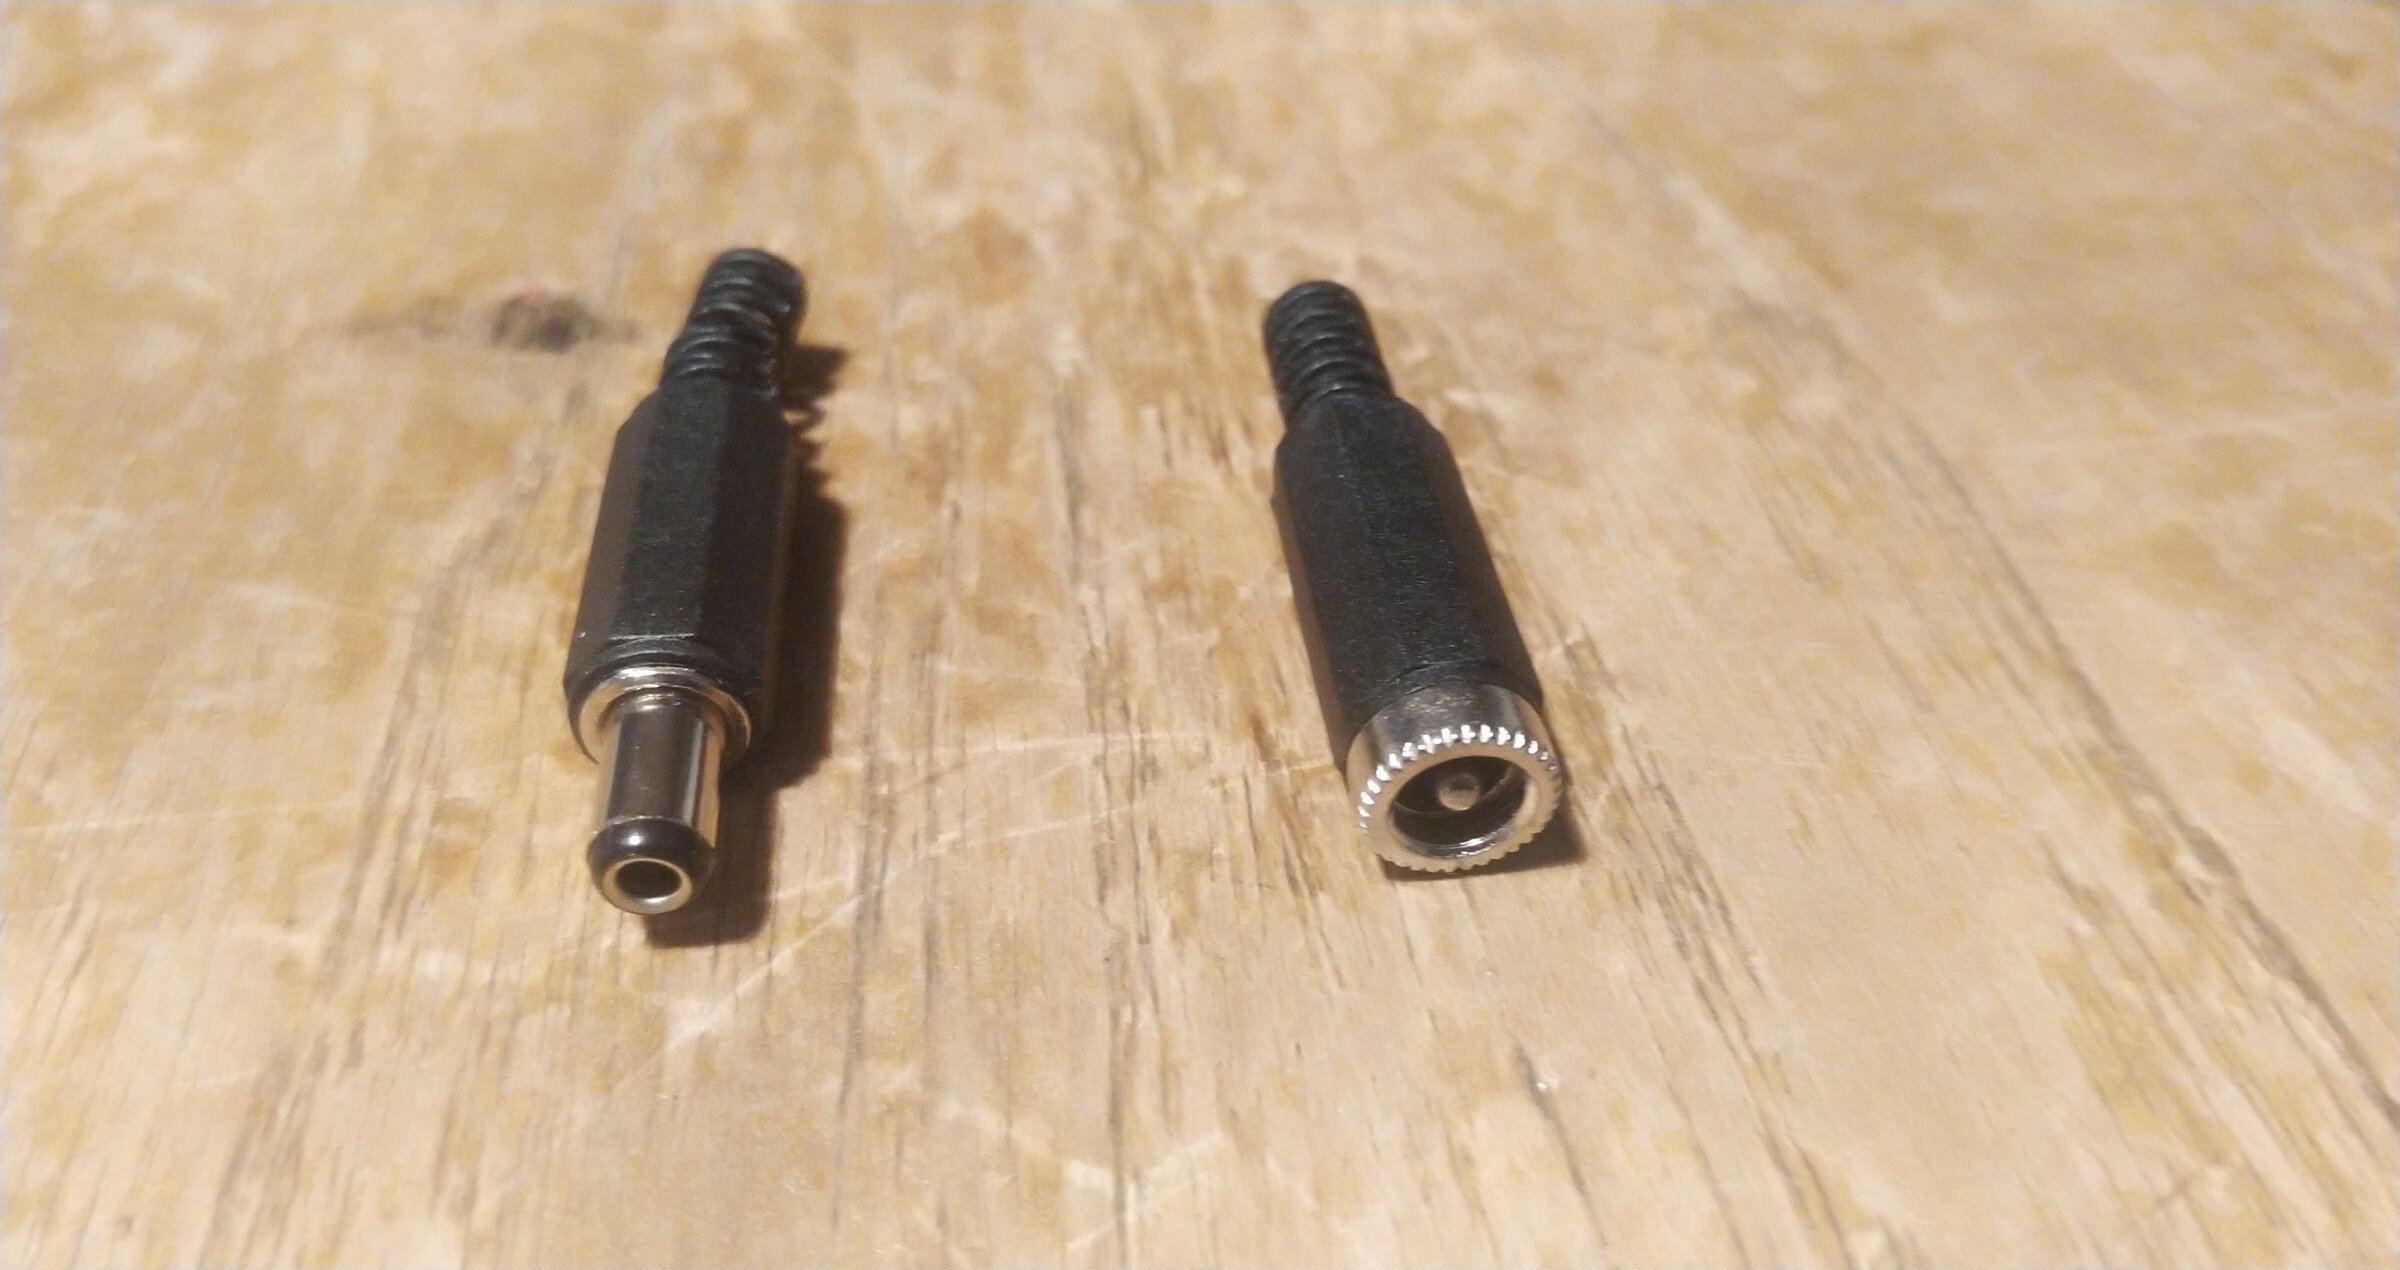 12v DC Plug And Socket